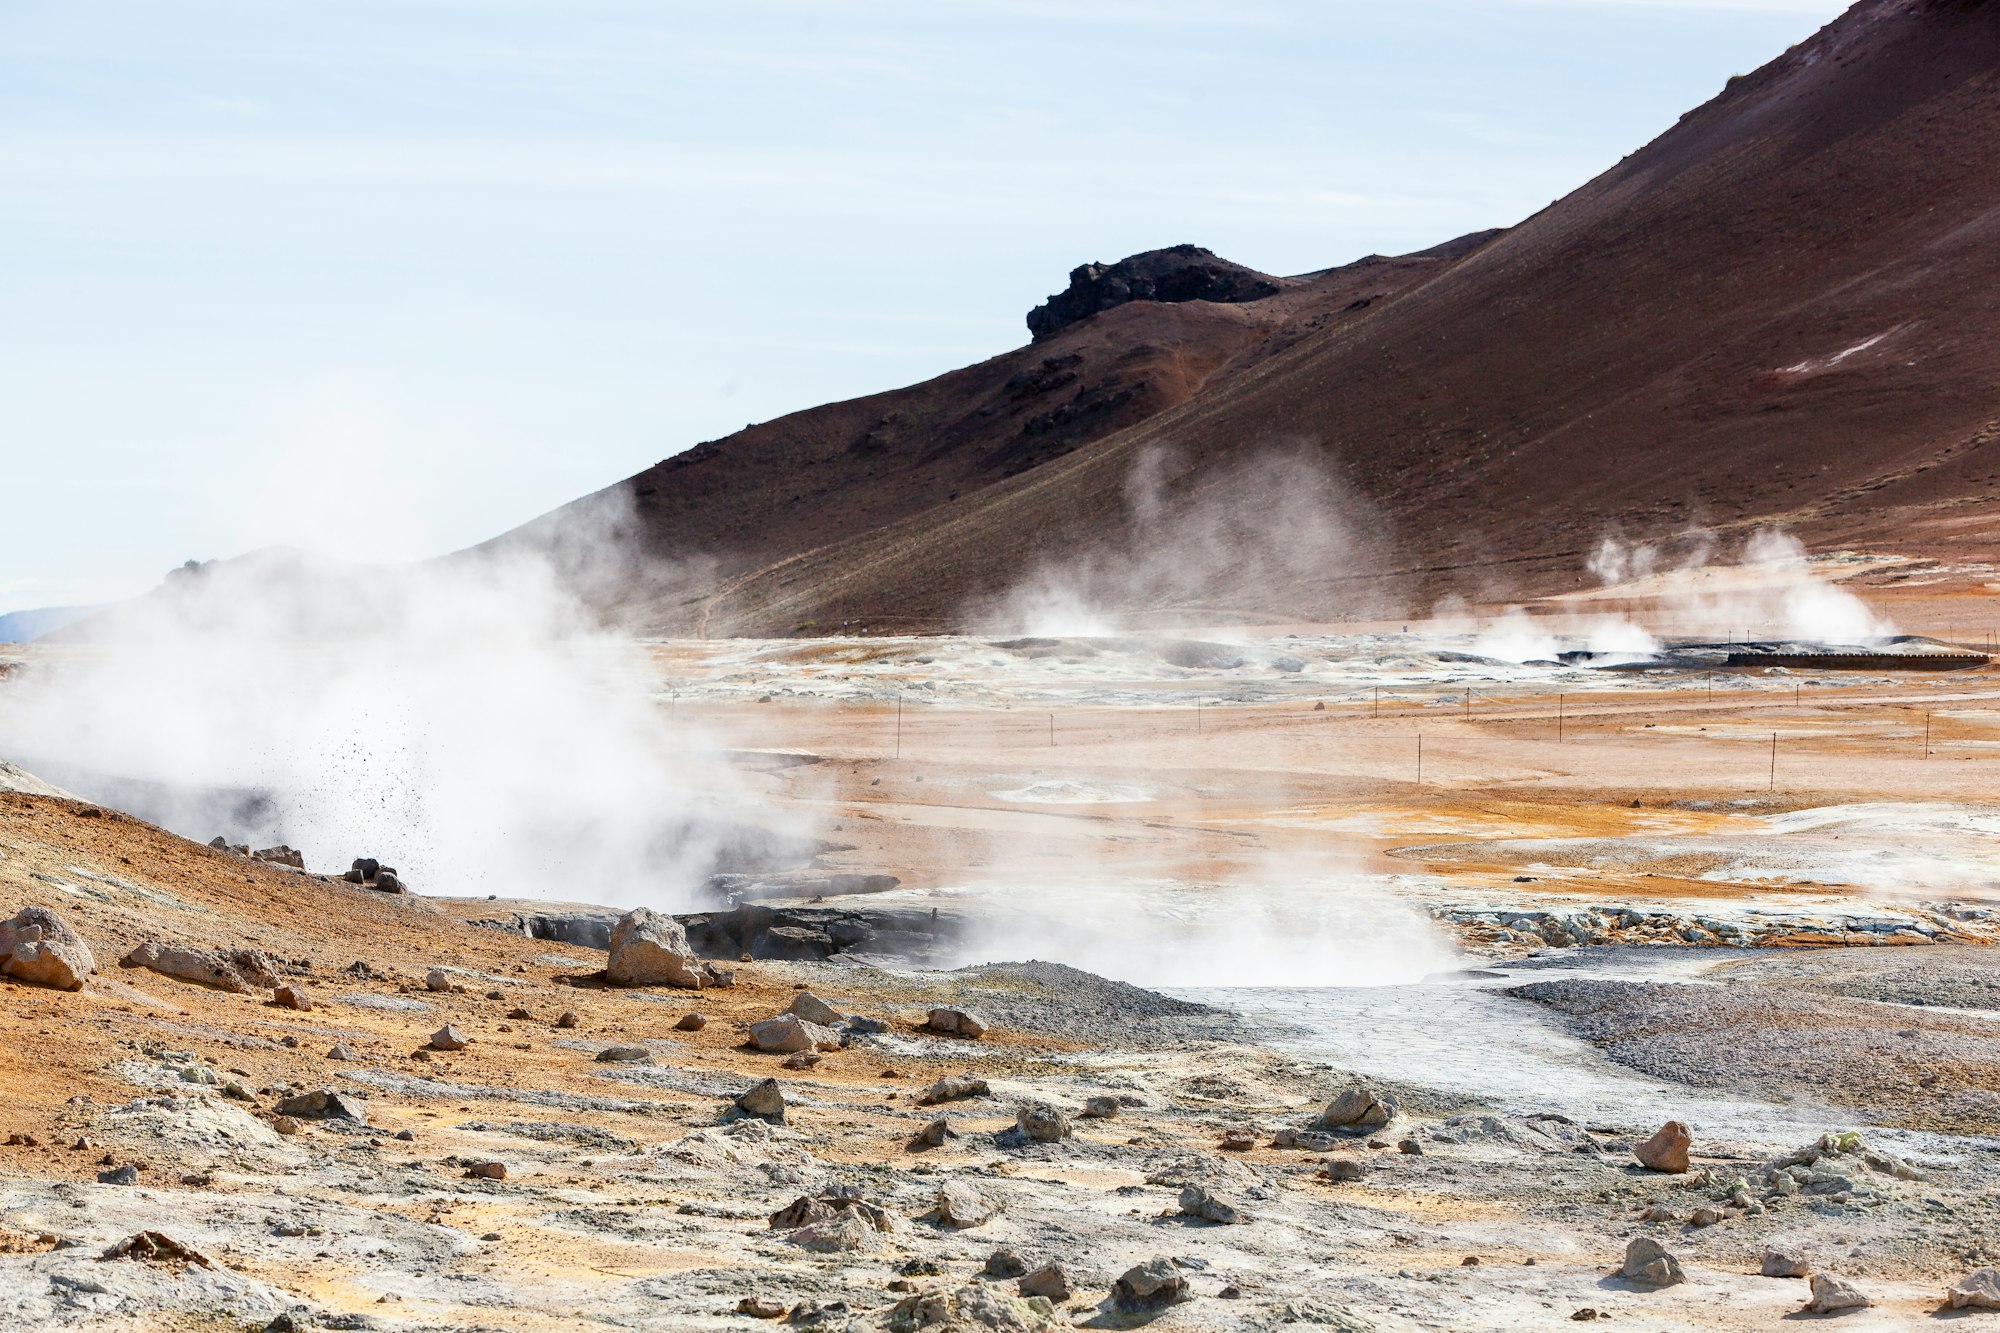 Geothermal steam